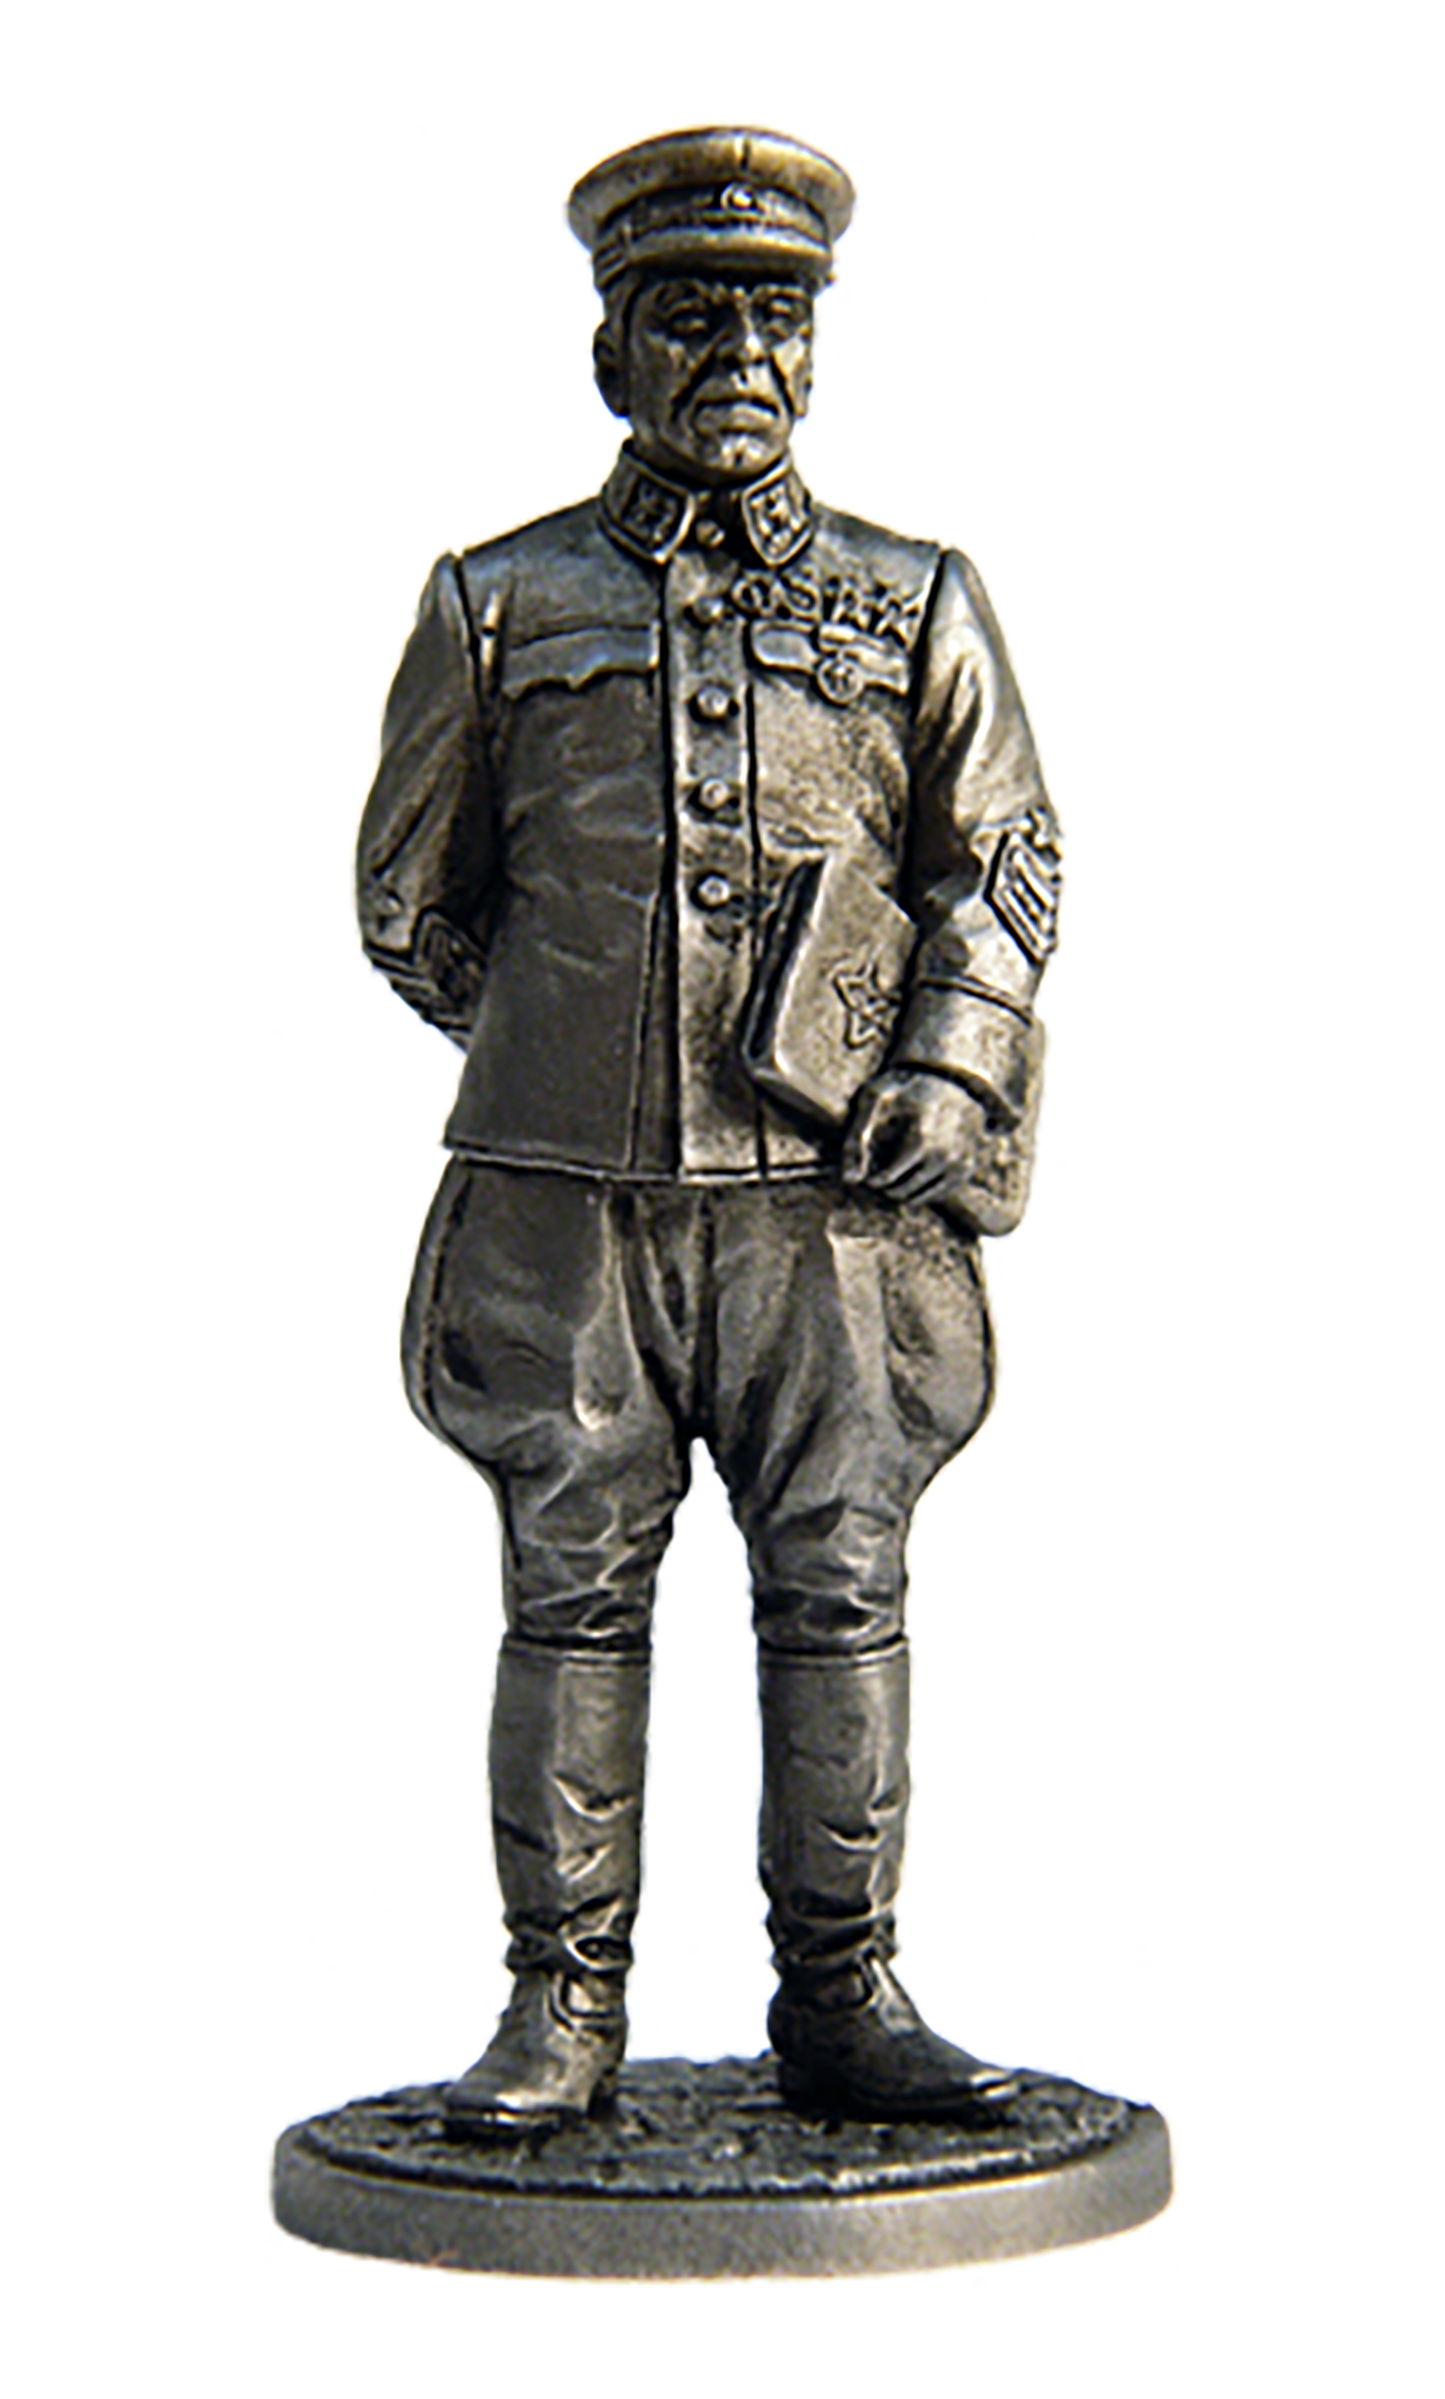 EK-WW2-2 - начальник Генштаба РККА маршал Советского Союза Б.М.Шапошников, 1941-42 гг. СССР